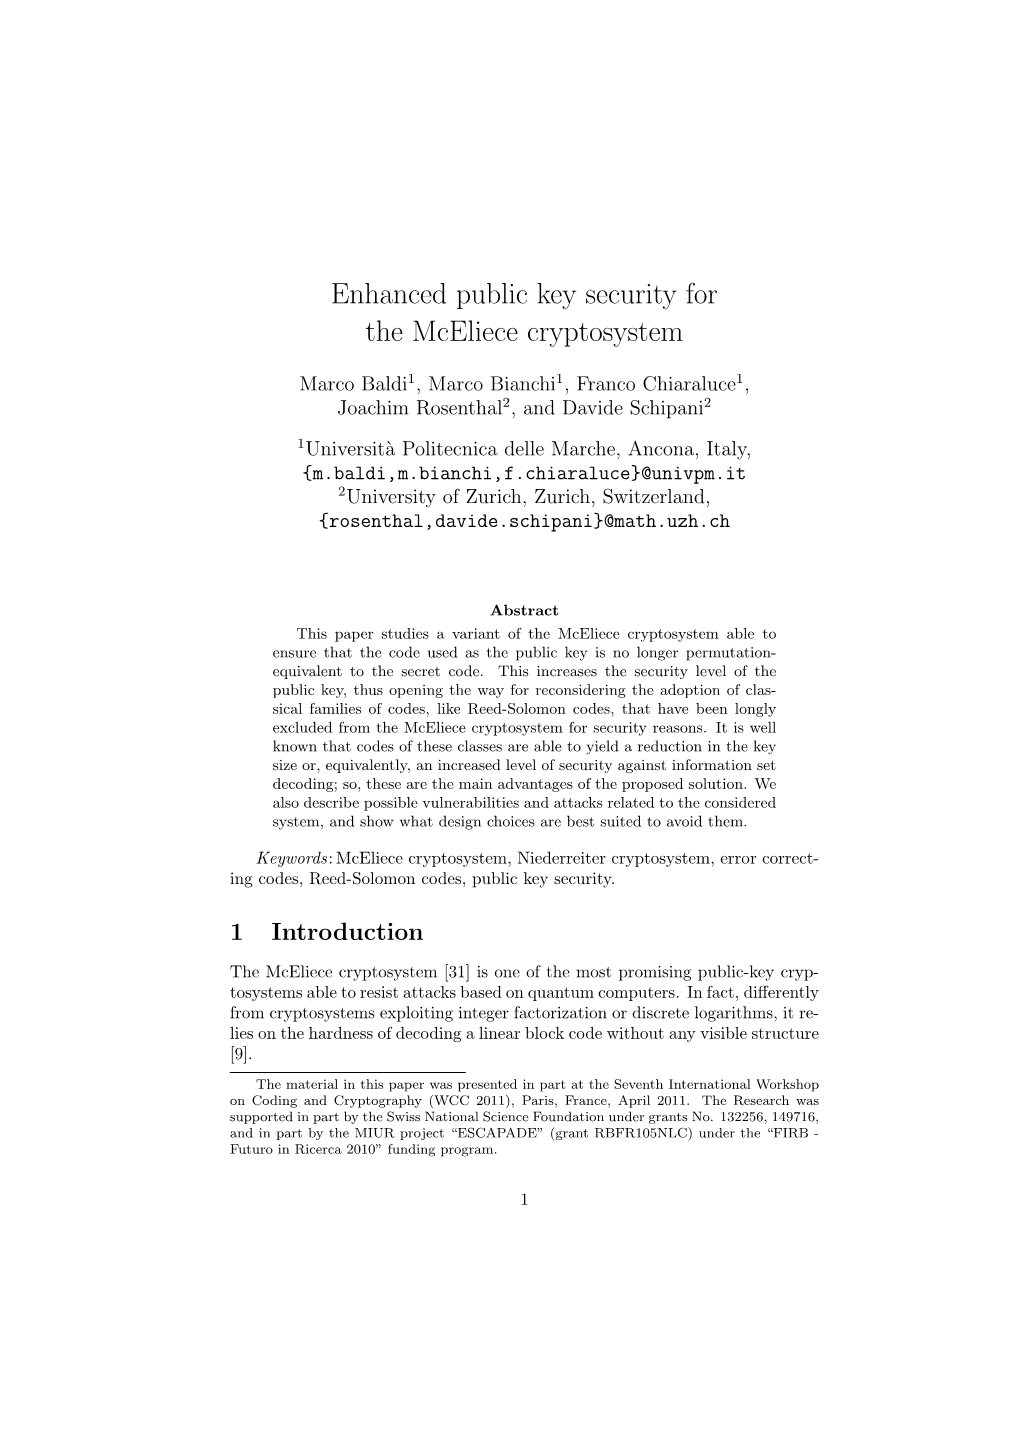 Enhanced Public Key Security for the Mceliece Cryptosystem